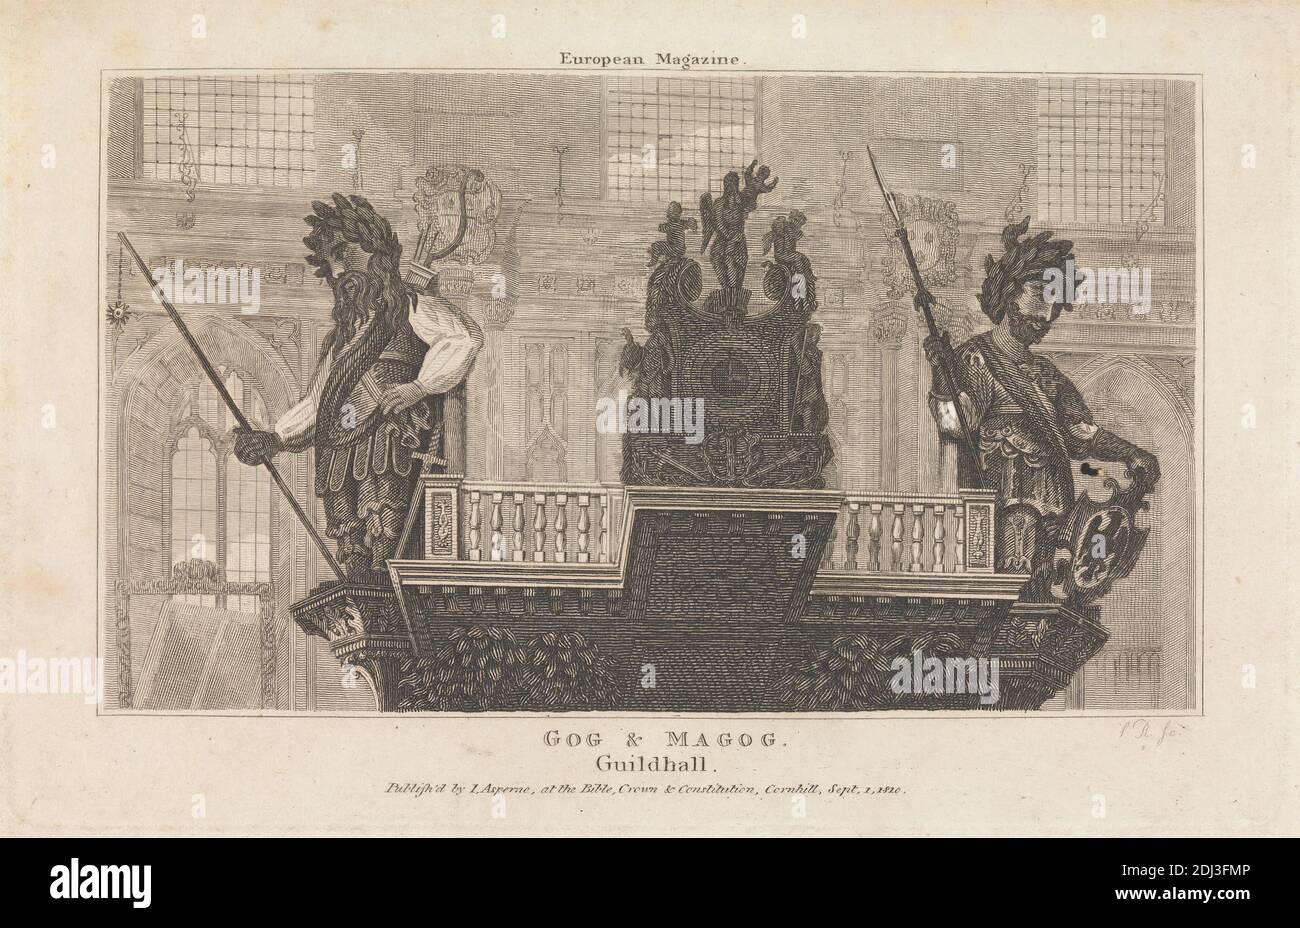 Gog und Magog, Guildhall, nach unbekannten Künstler, unbekannter Künstler, (R. S.), 1820 Stockfoto